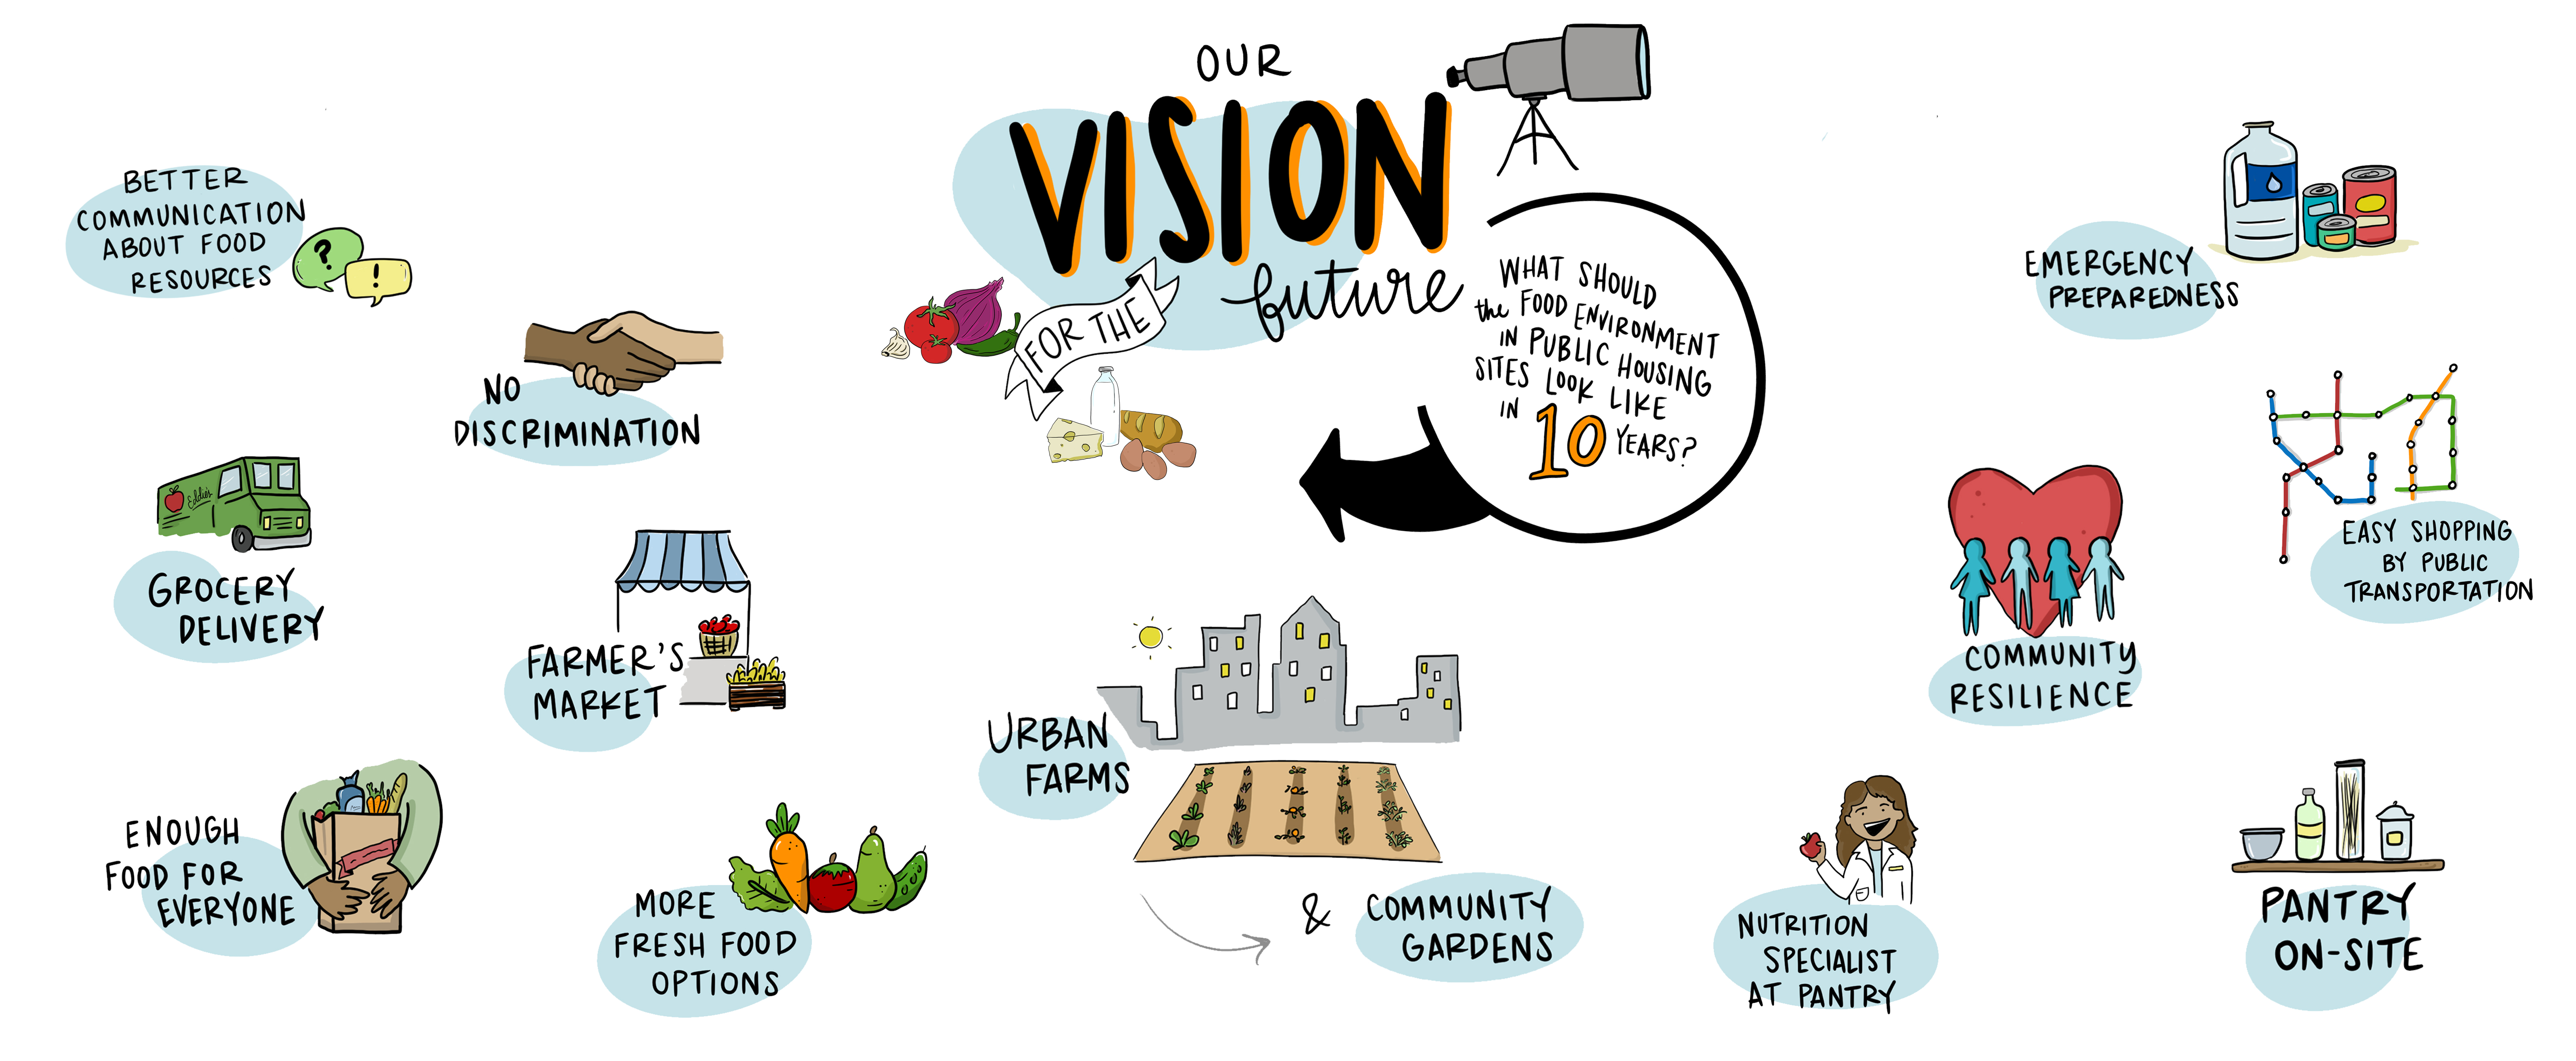 2020 Resident Food Equity Advisors Vision